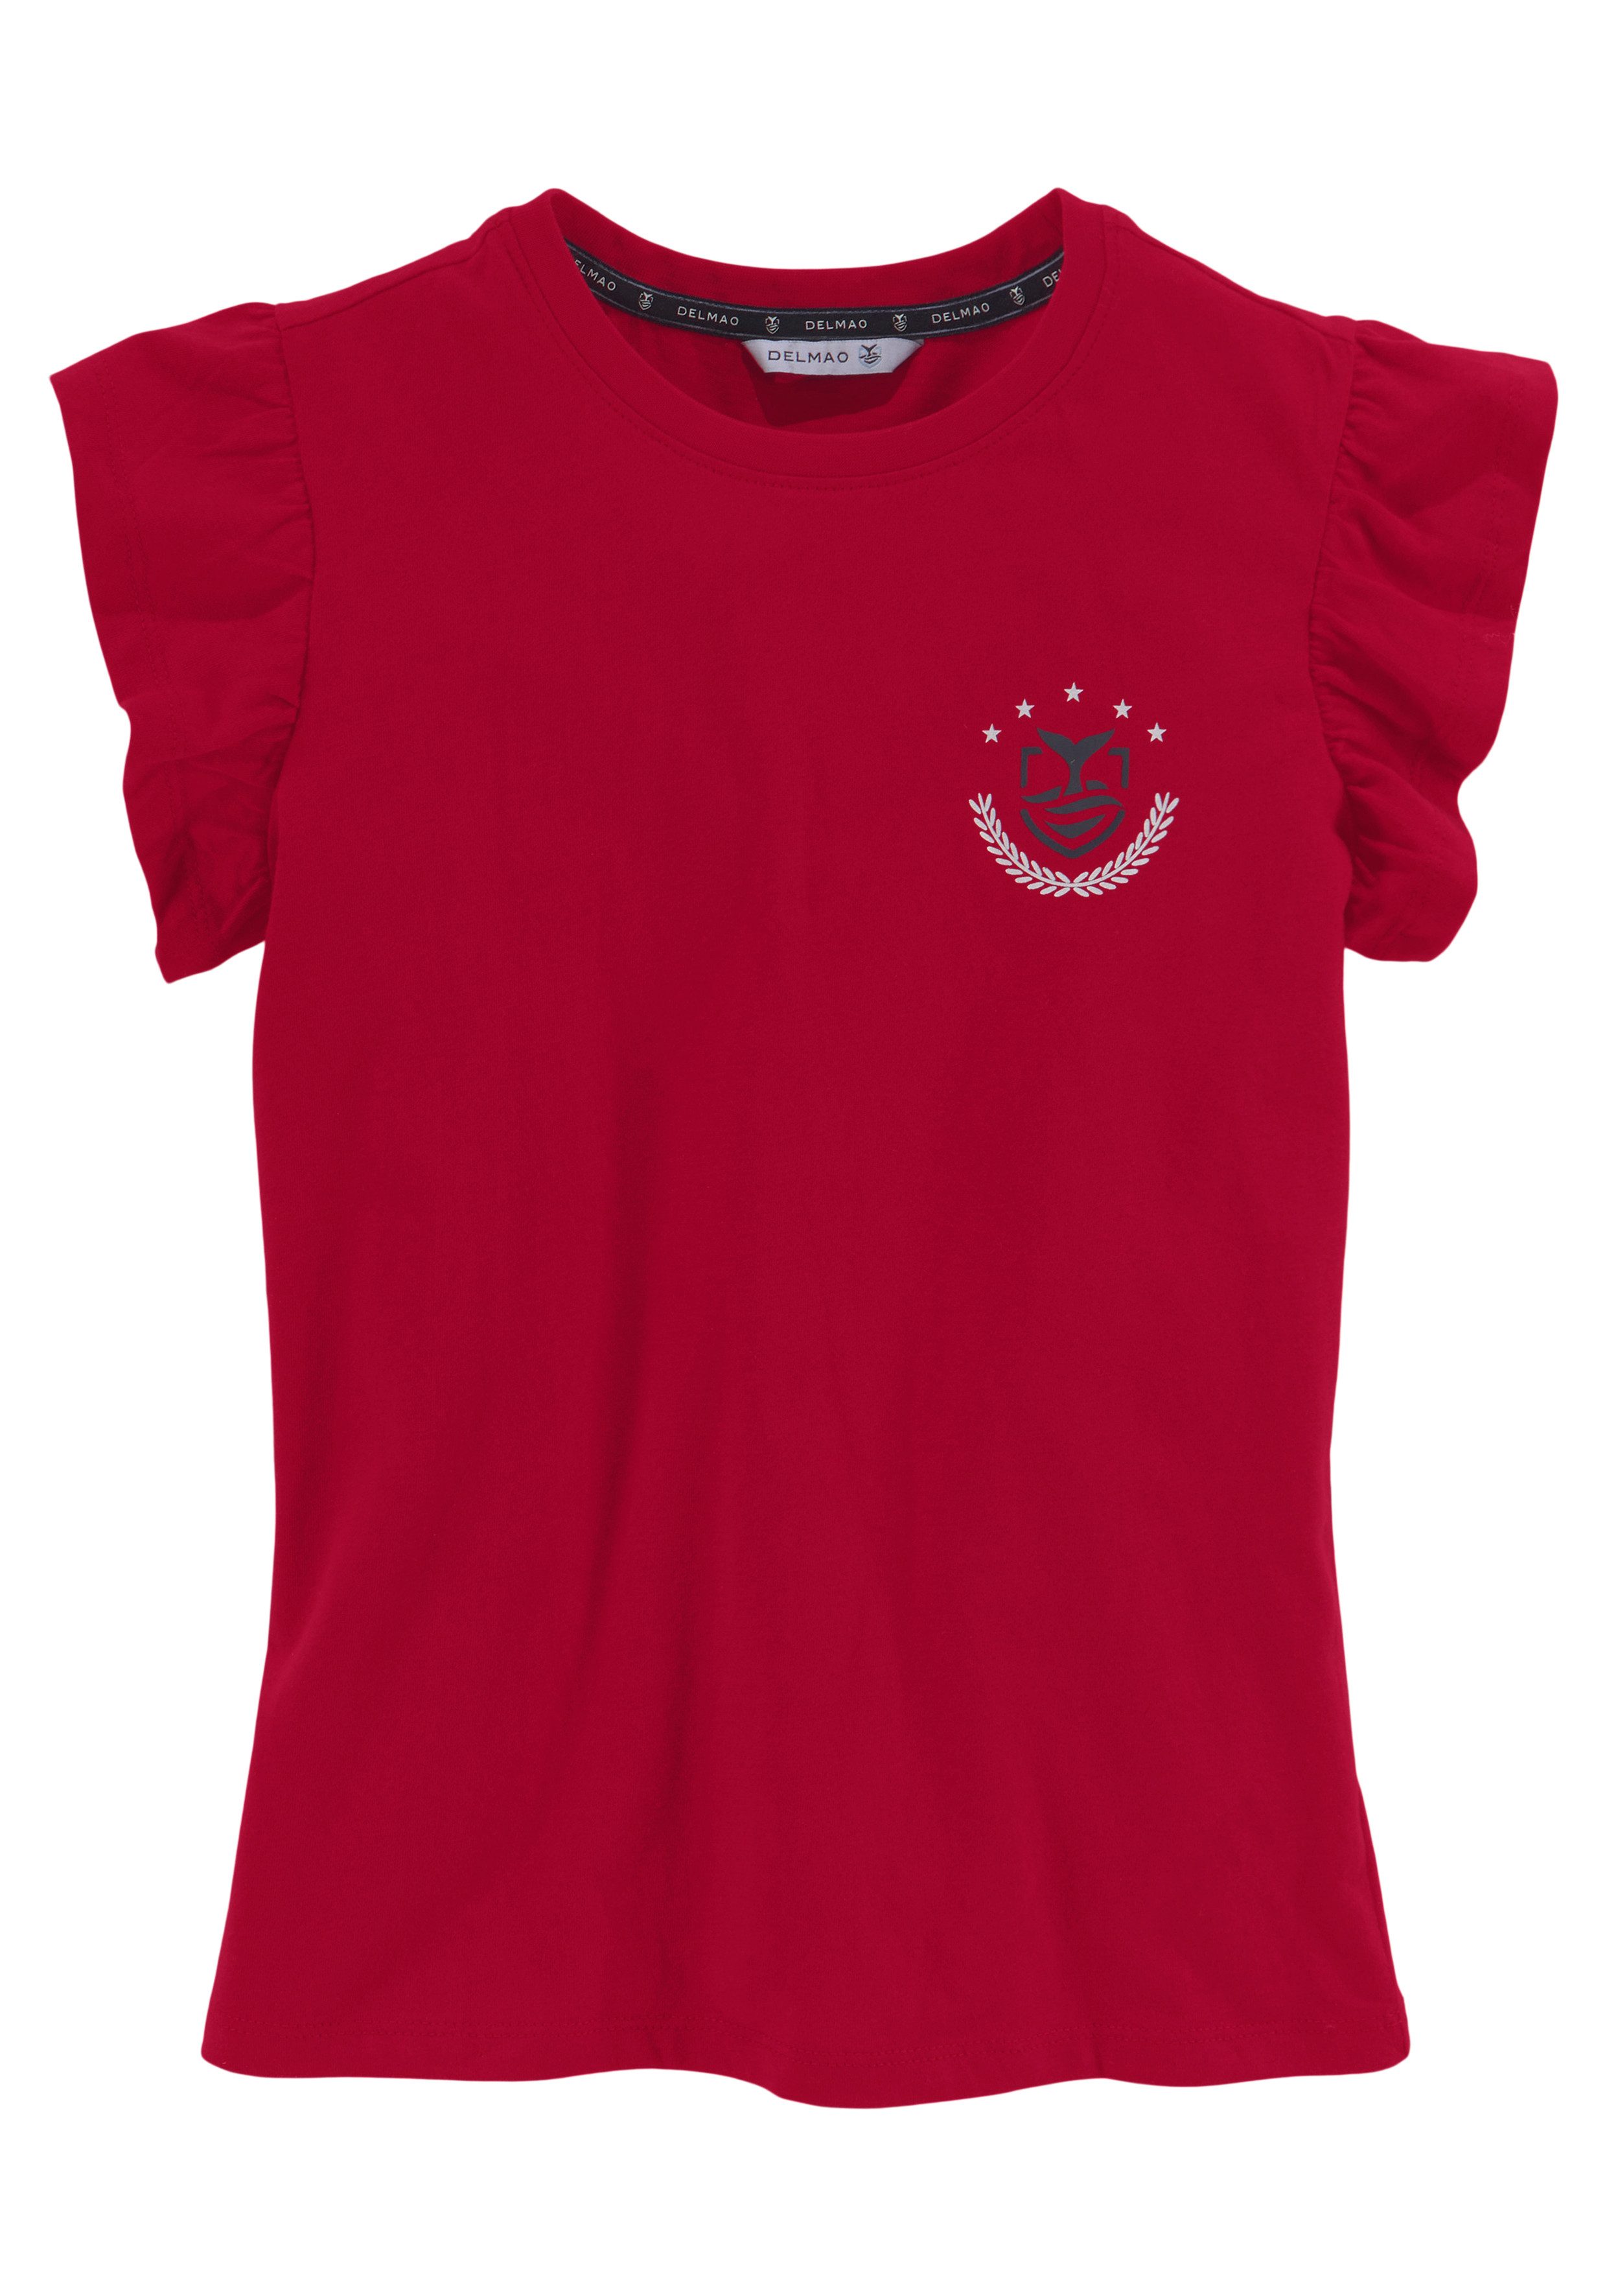 DELMAO T-Shirt für mit Rüschen Mädchen